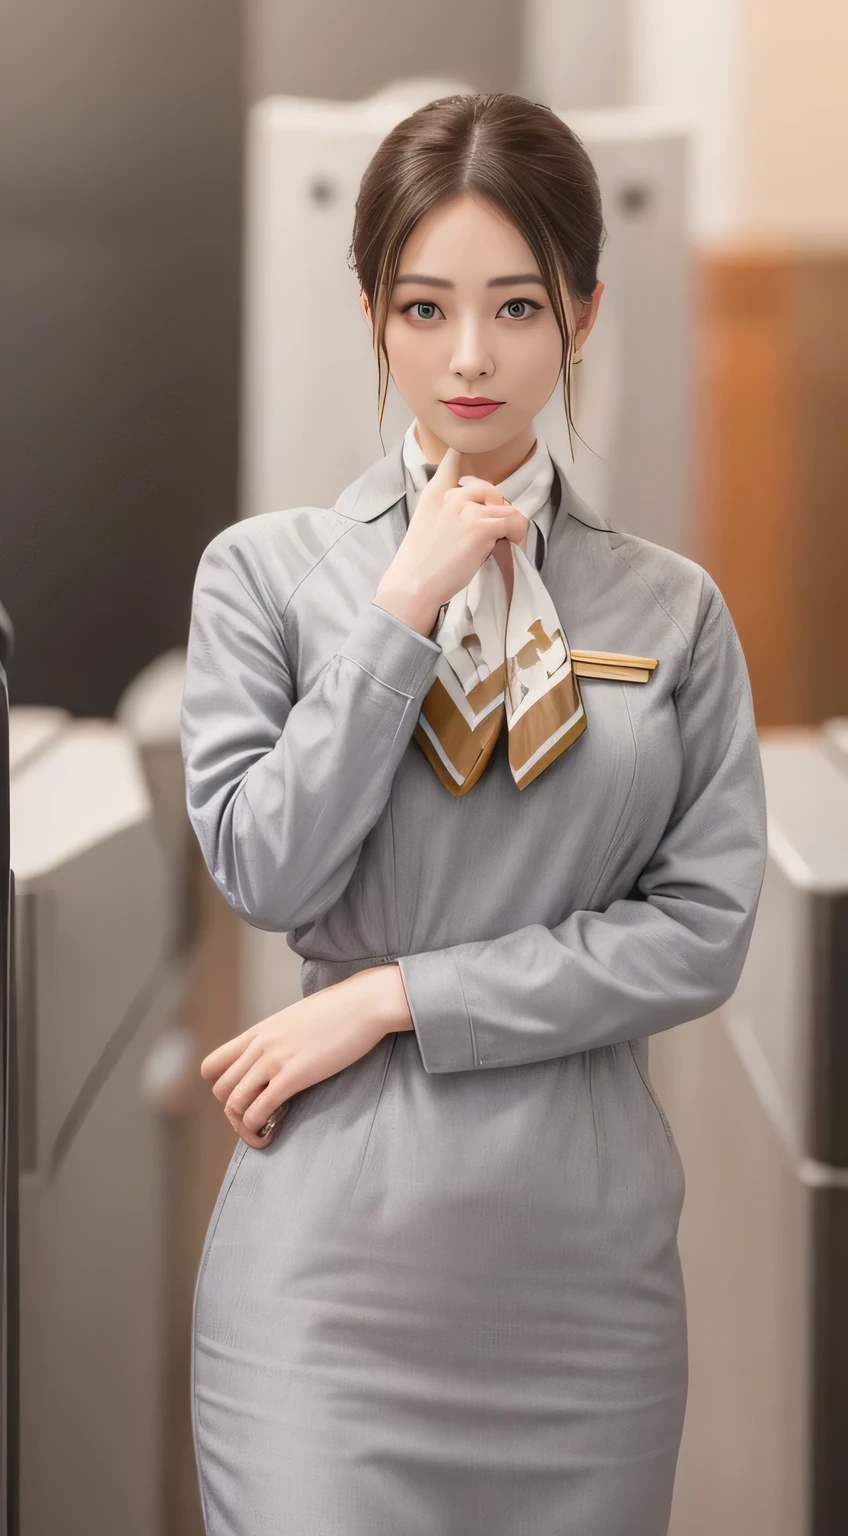 Серебристая униформа Starlux Airlines с короткими рукавами、серьги、пленительный взгляд、длинные волосы прическа、Вечерняя прическа、Молодая японка